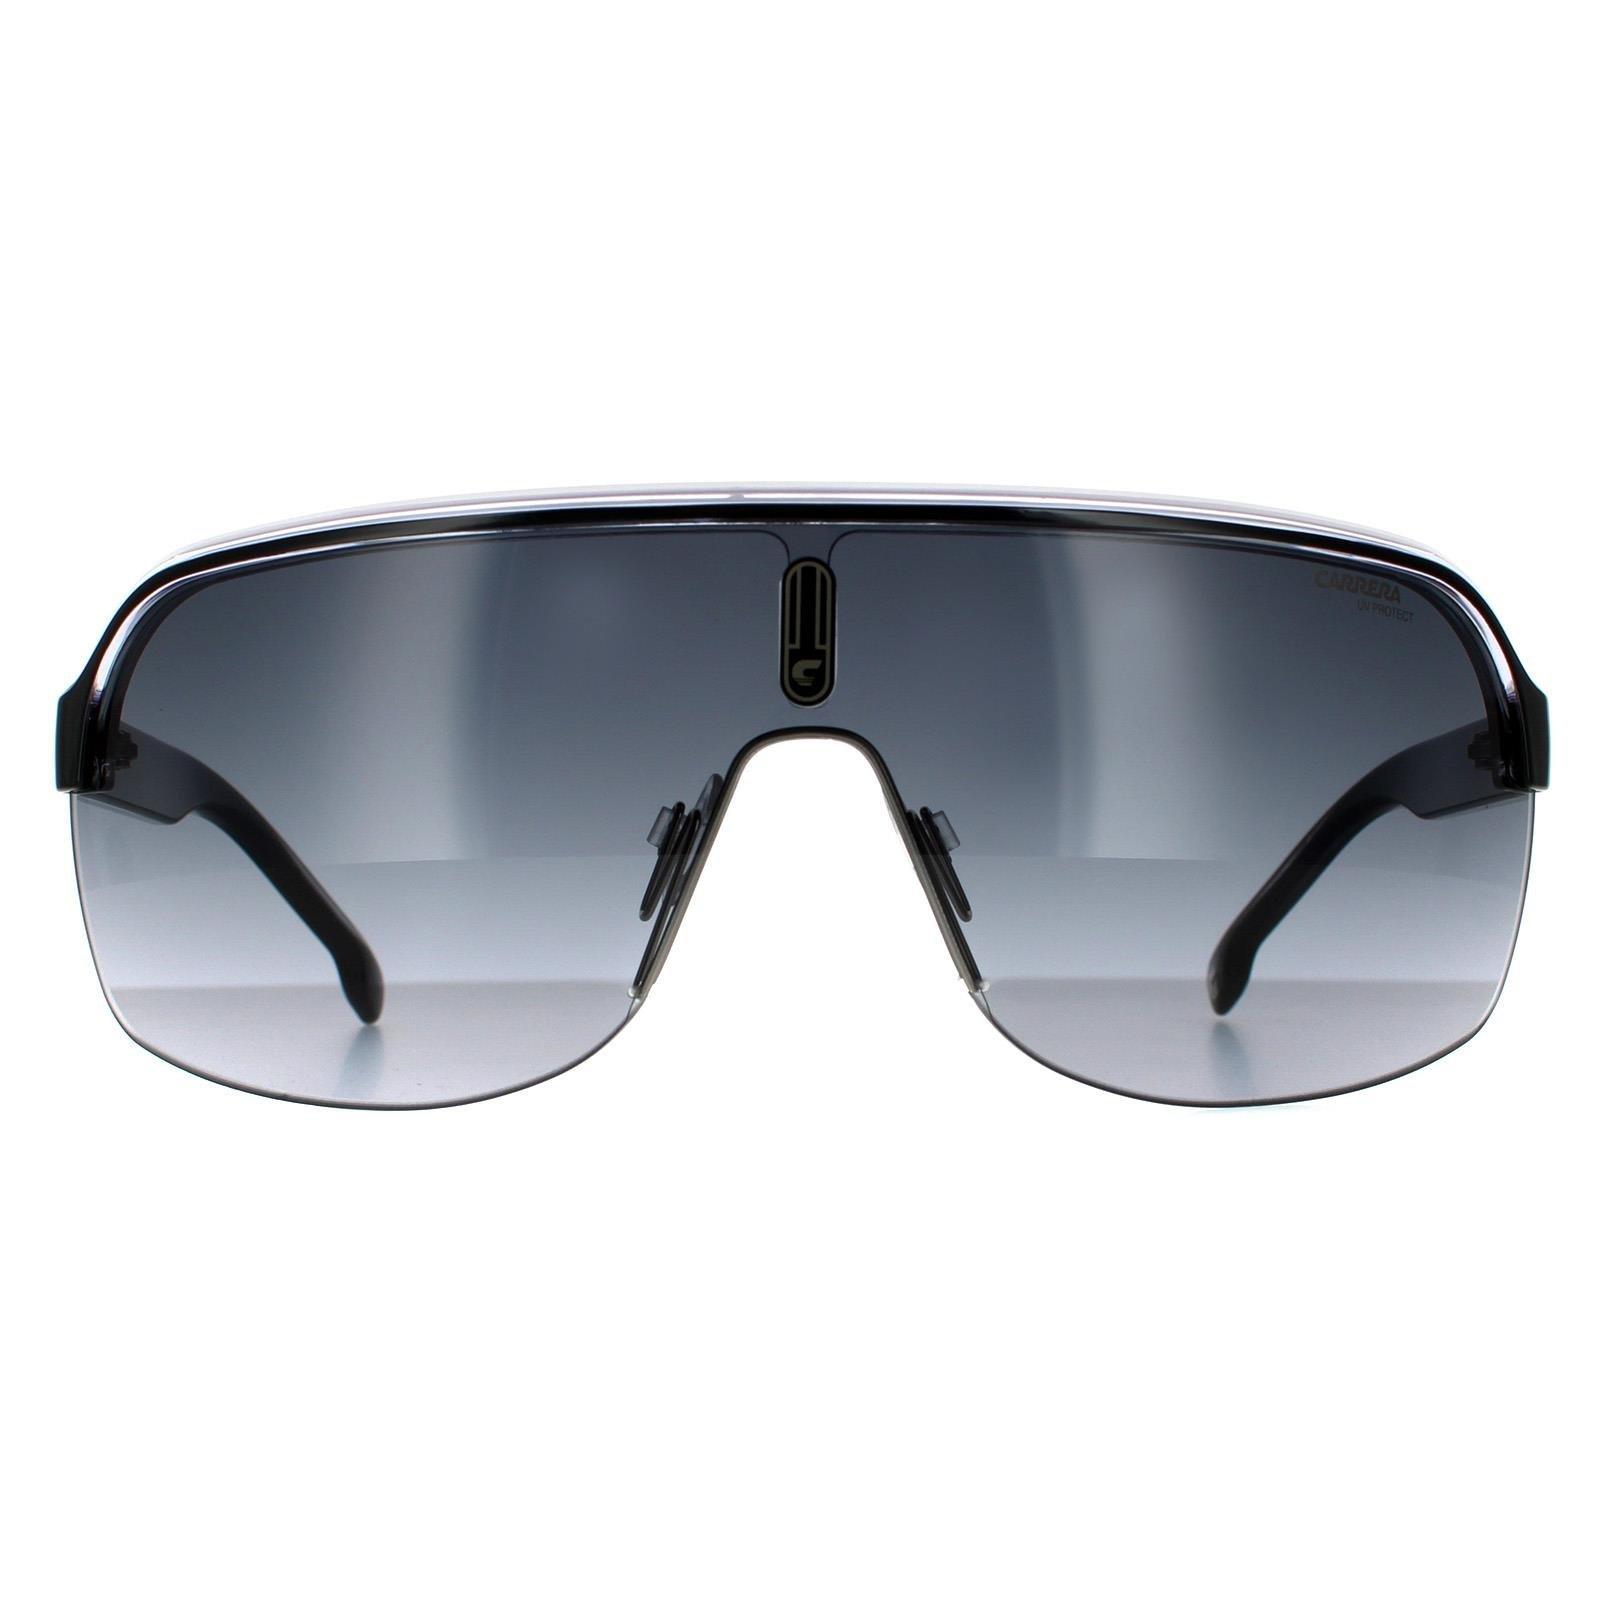 черные солнцезащитные очки на клипсе off white цвет black dark grey Черно-белые темно-серые солнцезащитные очки с градиентом Shield Carrera, черный